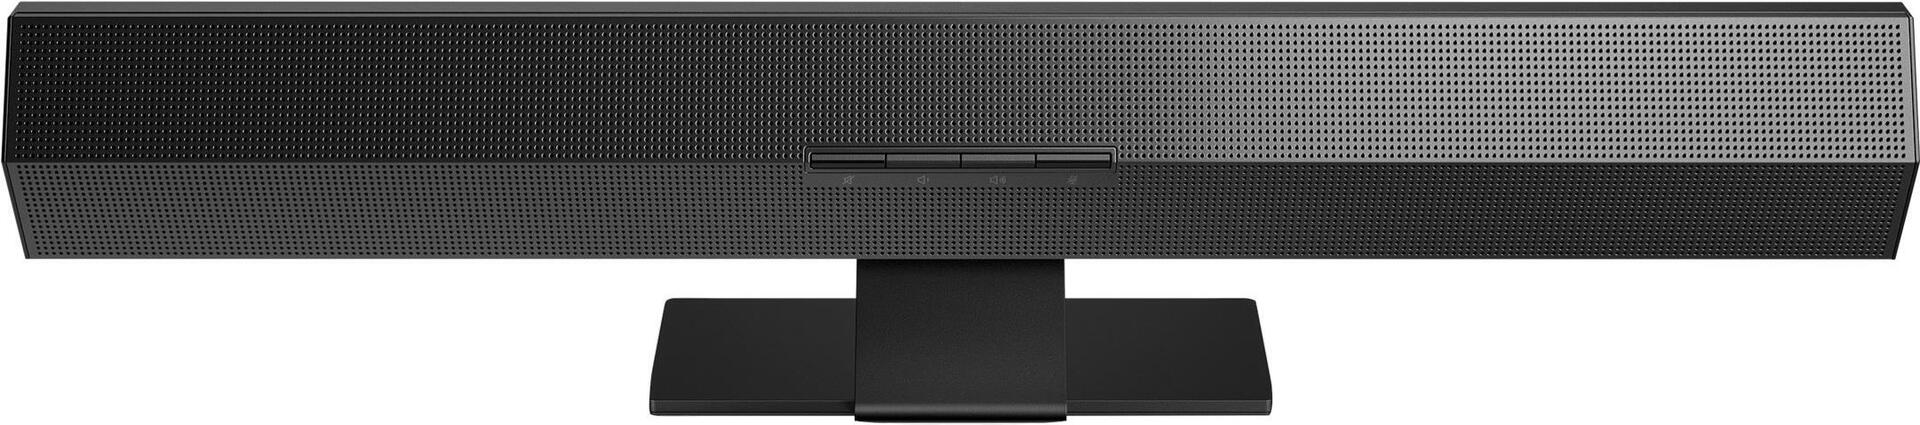 HP Z G3 Conferece Speaker Bar Stand (Nur Standfuß) (74N60AA) (geöffnet)